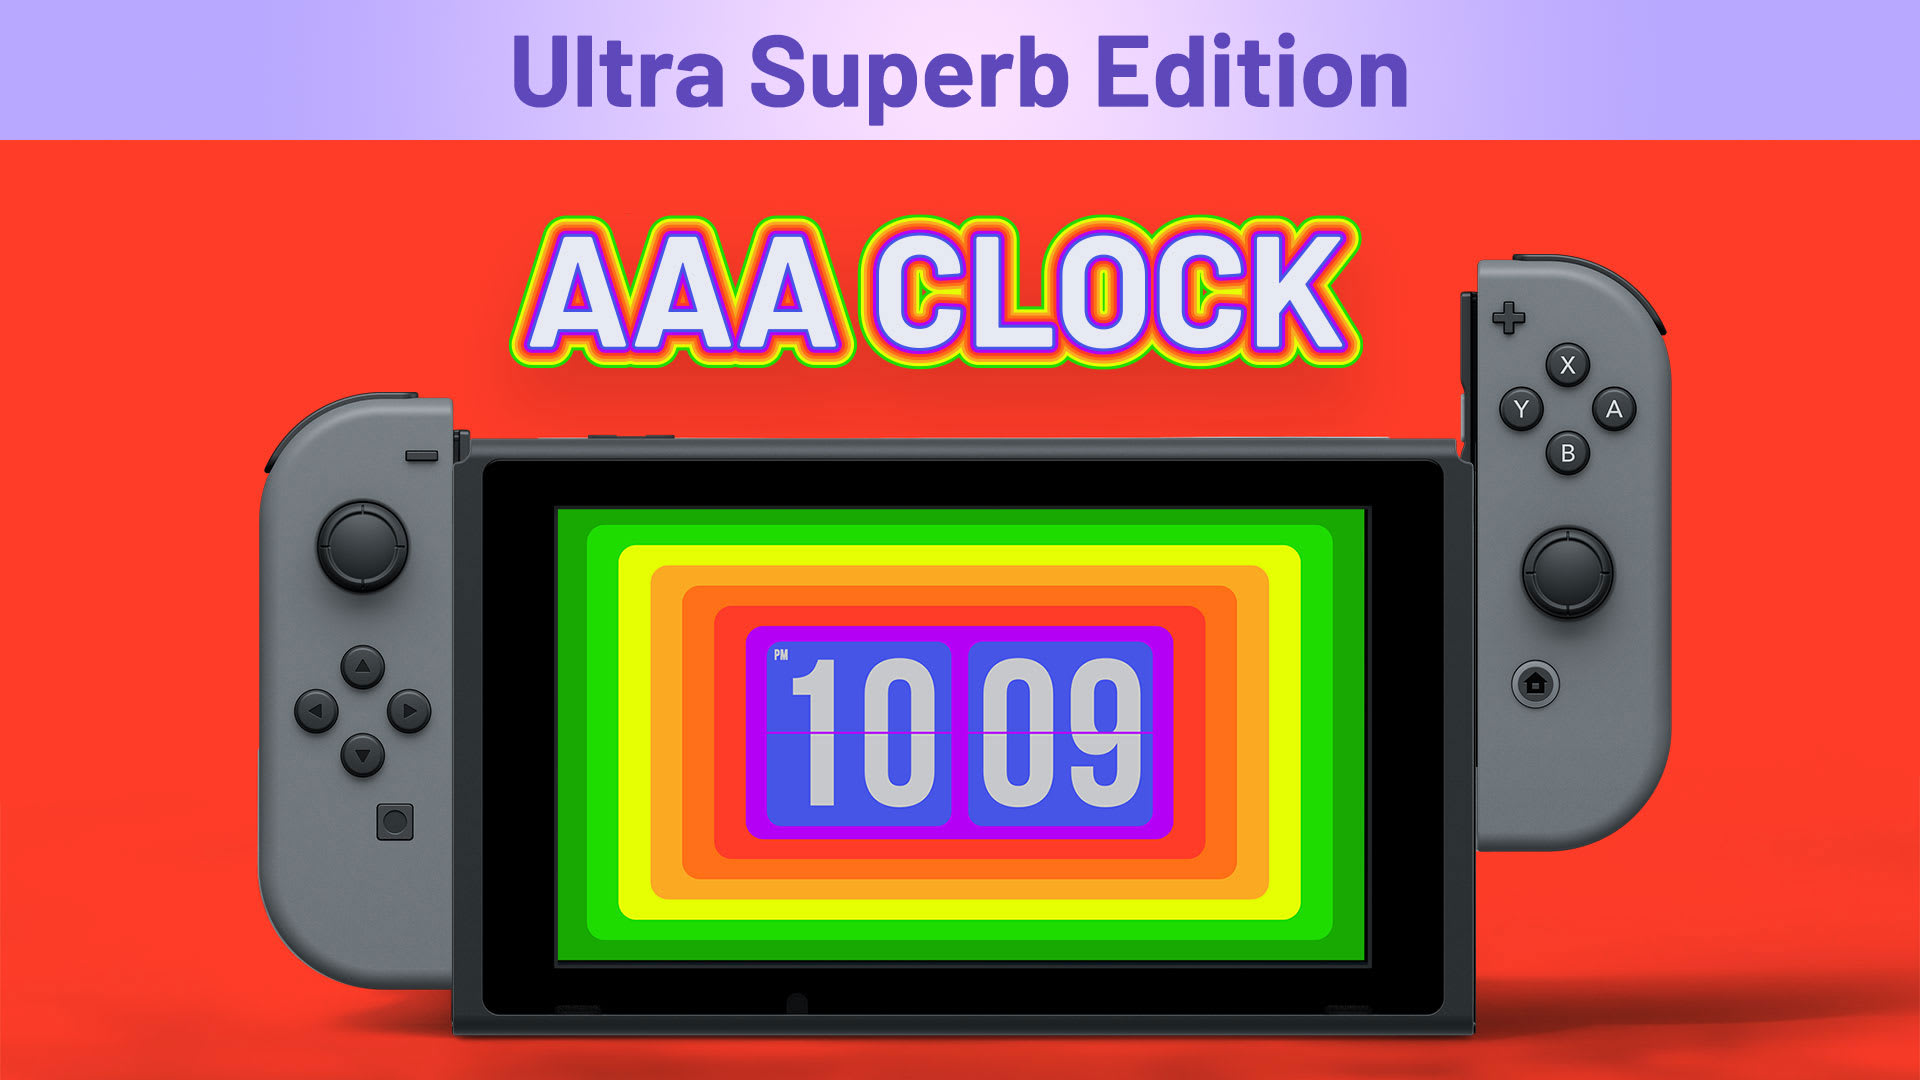 AAA Clock Ultra Superb Edition